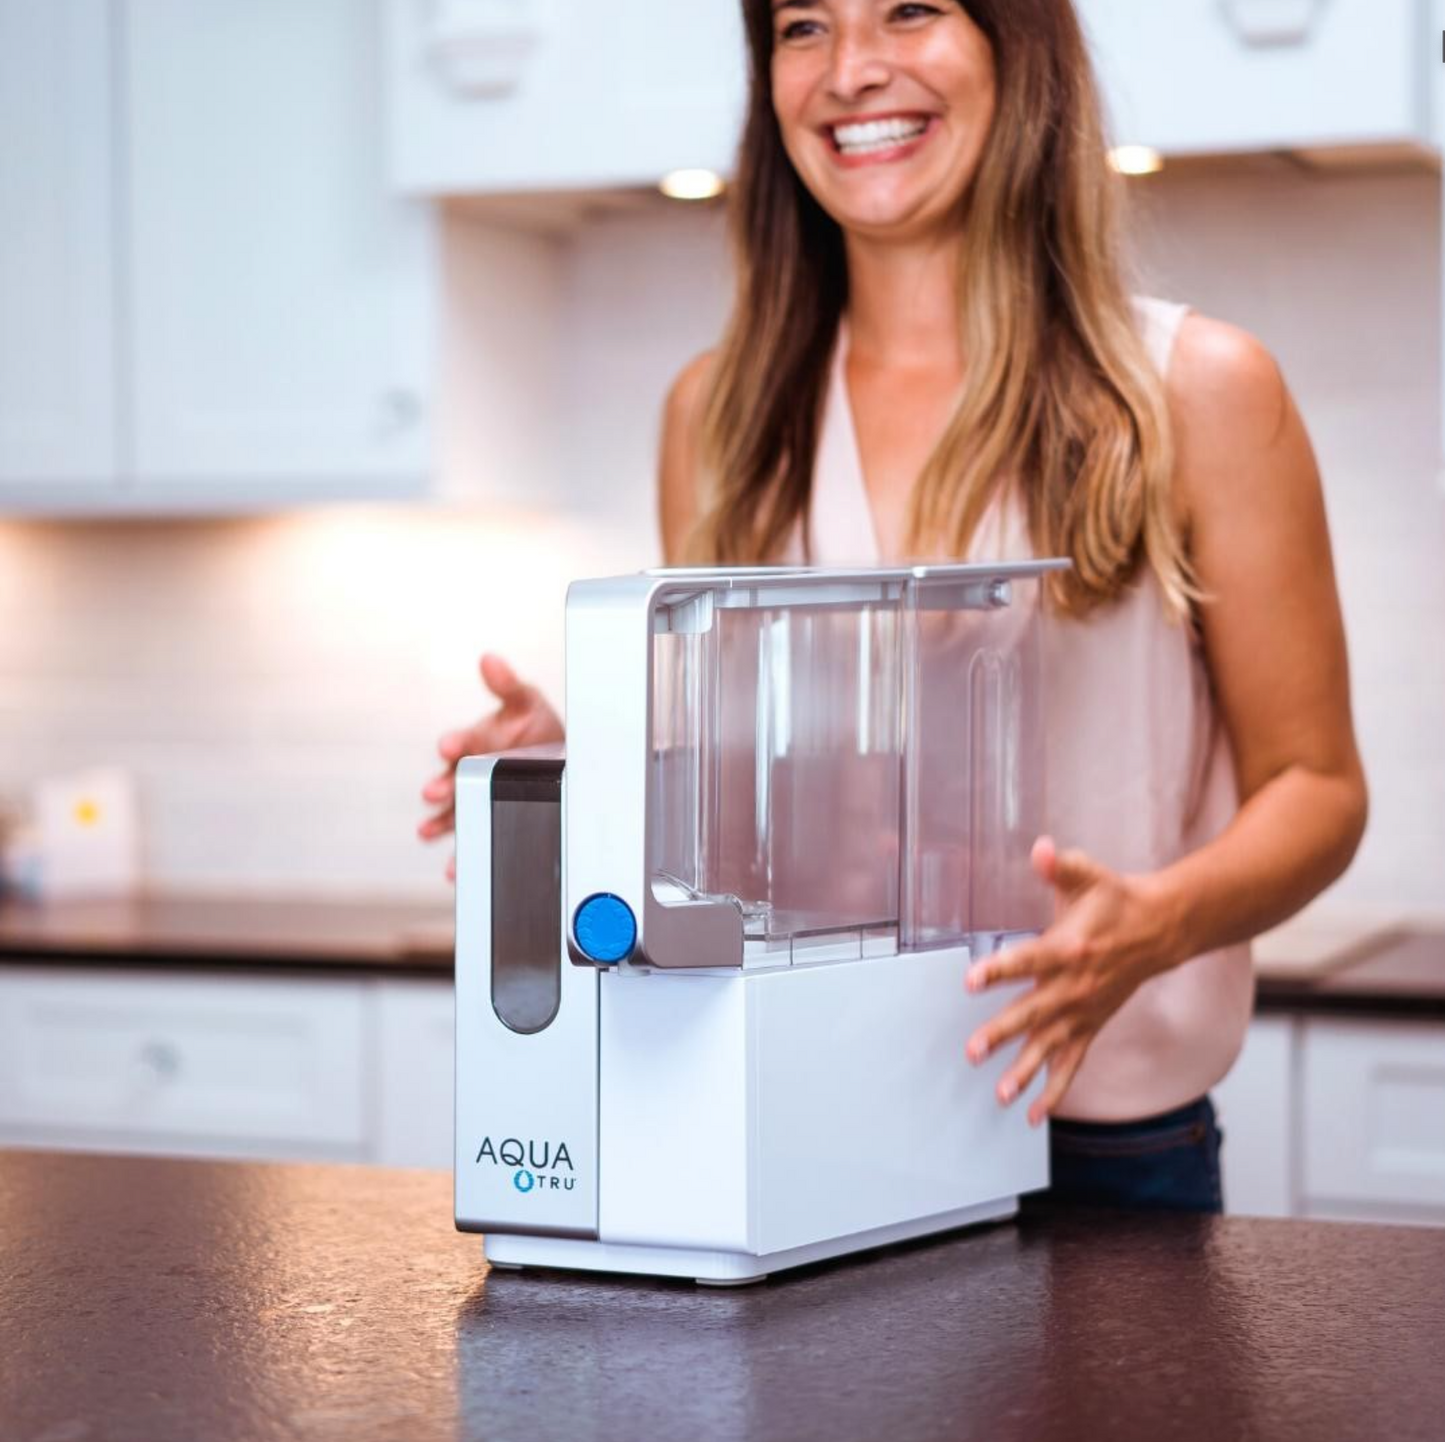 Filtro de agua AquaTru Classic + Paquete de filtros de 1 año + ¡Kit de descalcificación GRATIS!